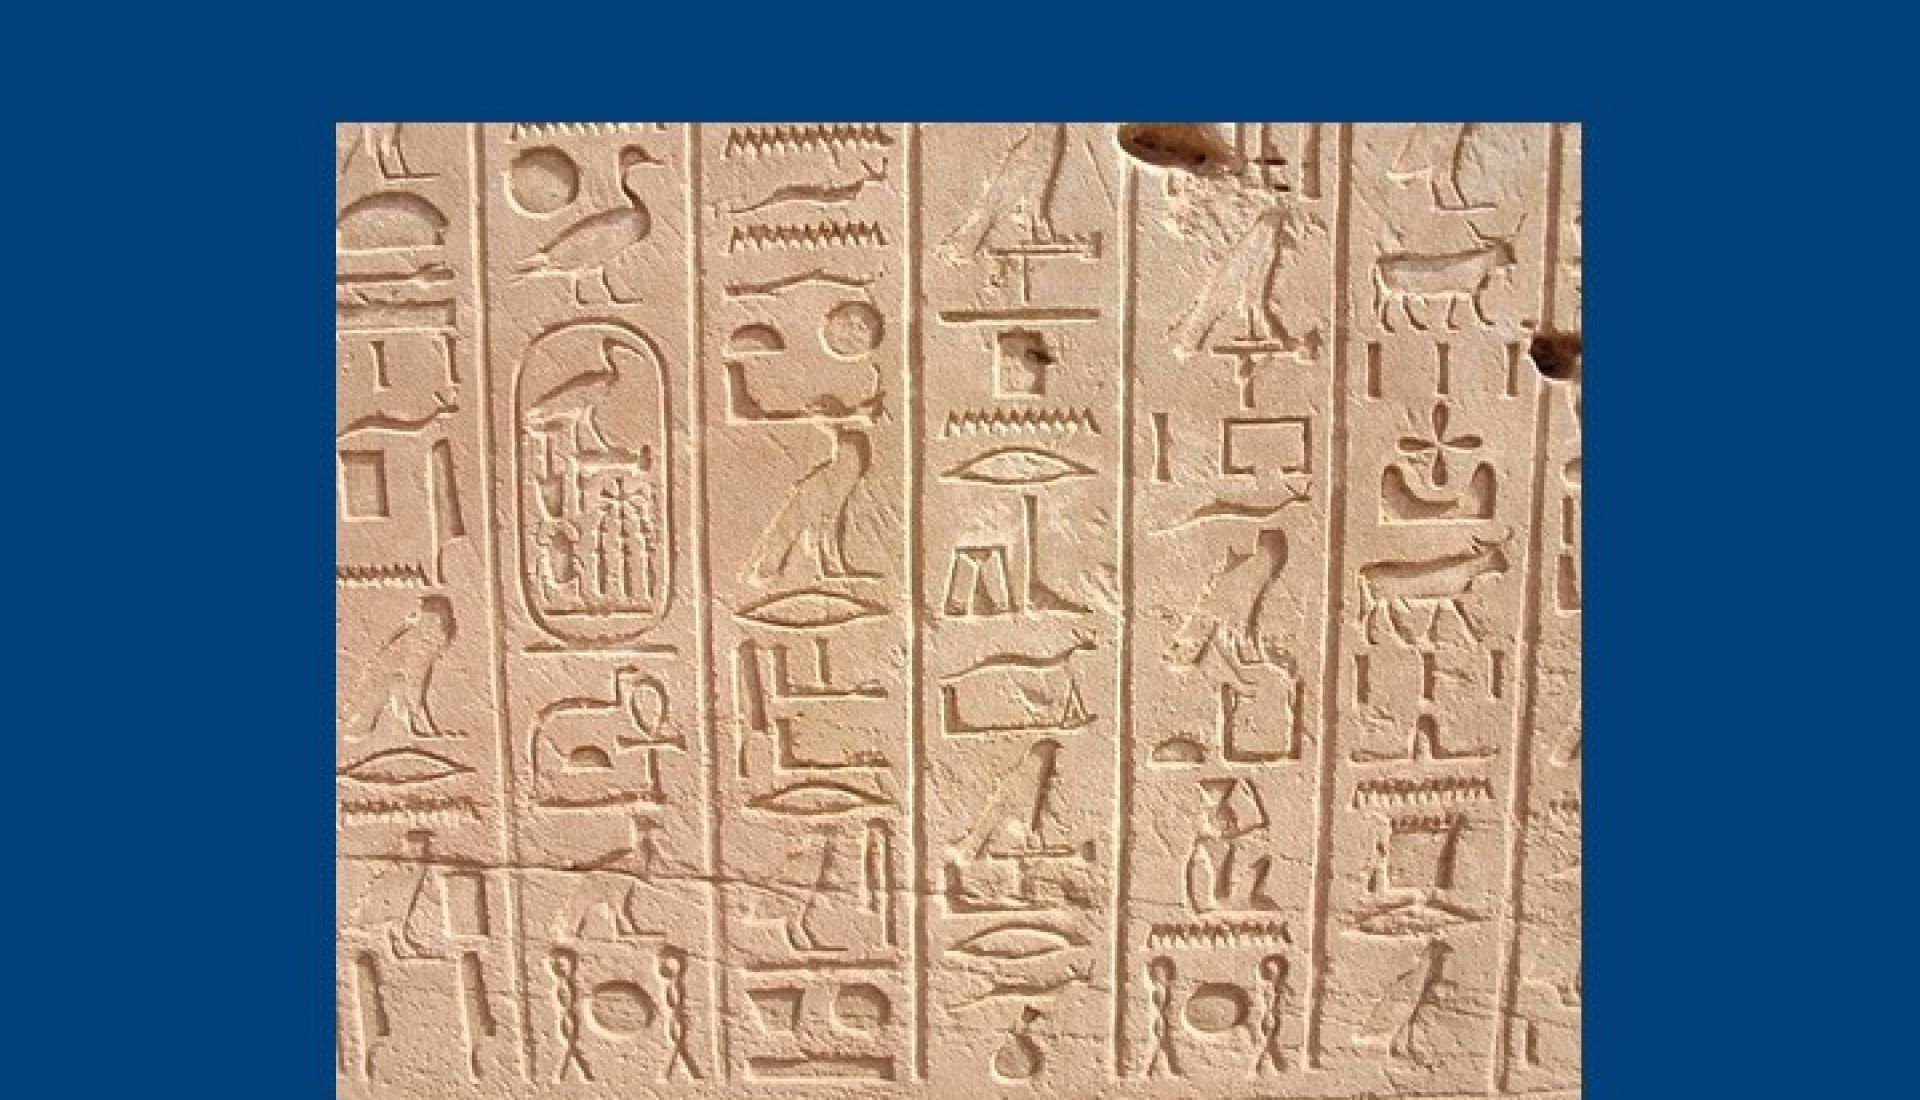 Le déchiffrement des hiéroglyphes par Champollion